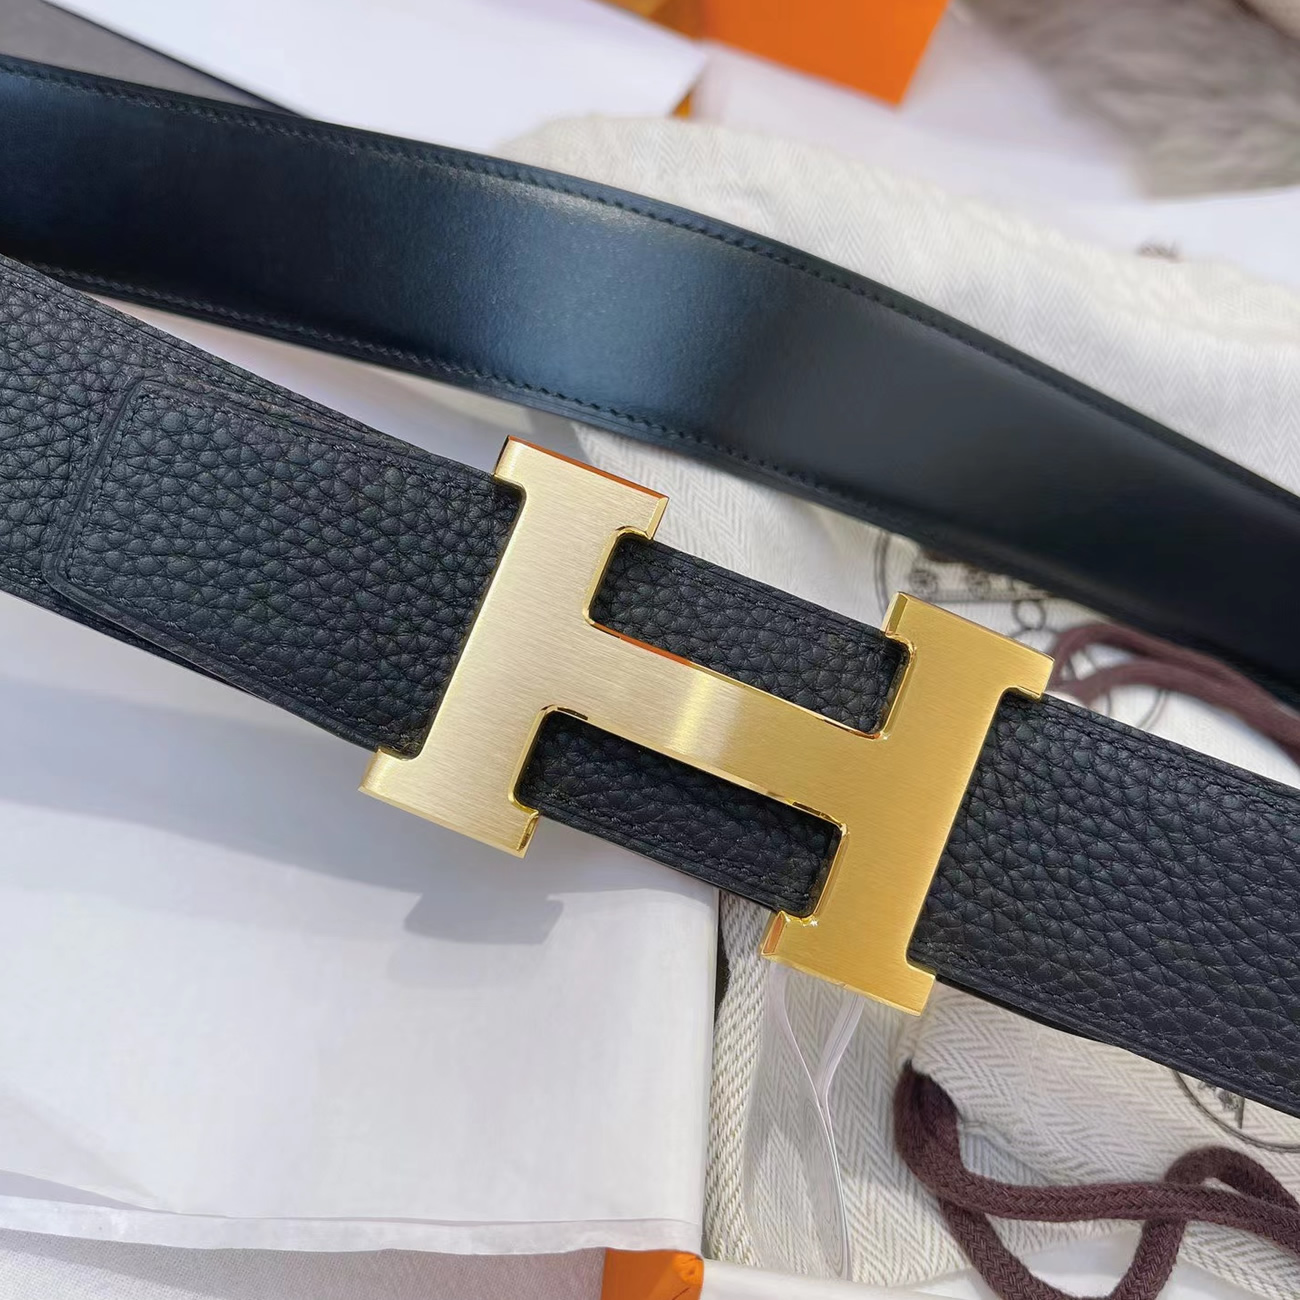 Hermes Full Grain Reversible Belt Leather Black 95CM-125CM